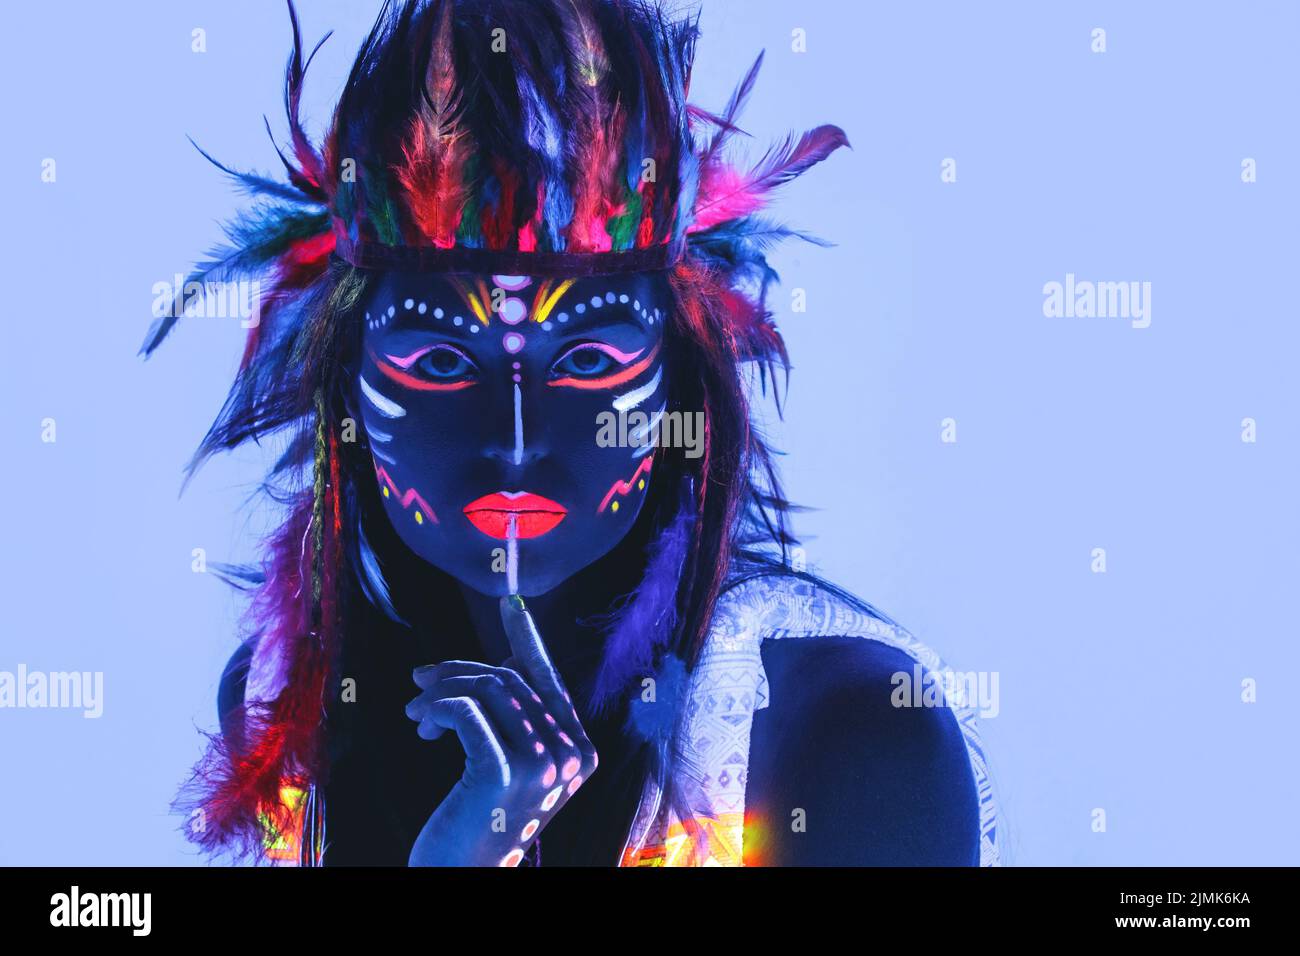 Modell in Bild von Native american mit Neon-Make-up, die von fluoreszierender Farbe in ultraviolettem Licht gemacht. Stockfoto